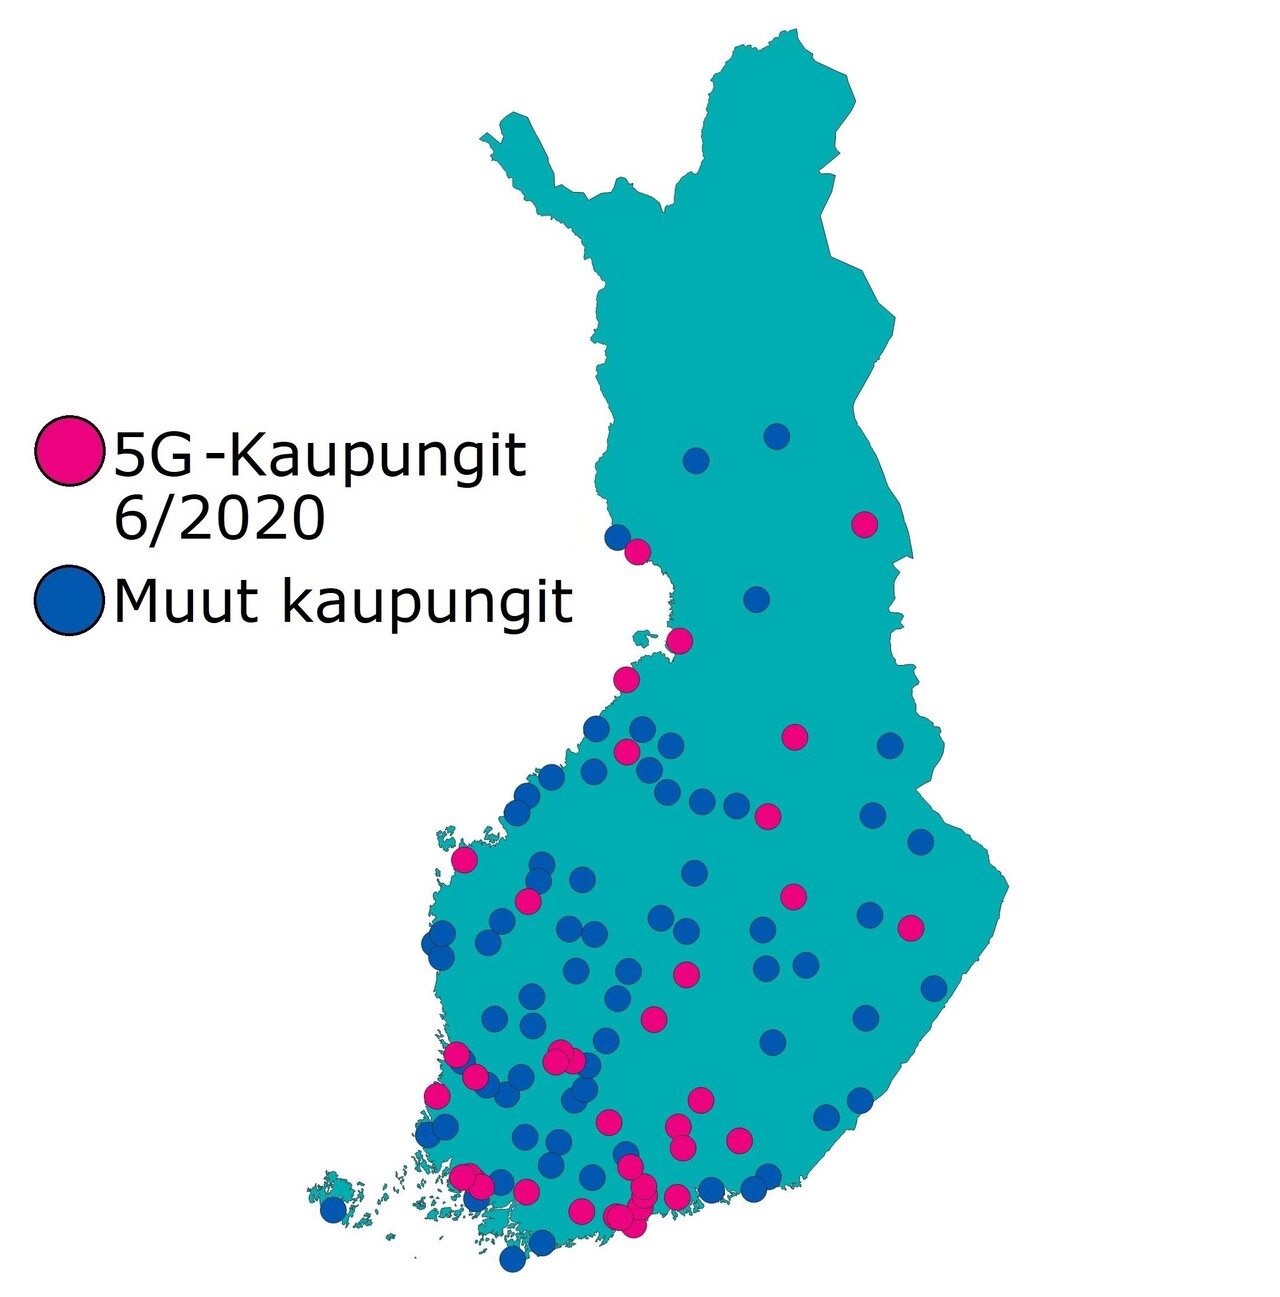 5G-kaupungit kesäkuun 2020 lopussa: Suomessa oli 38 kaupunkia, joissa oli 5G-verkkoa vuoden 2020 kesäkuun lopussa. 69 kaupunkia oli ilman 5G-verkkoa.